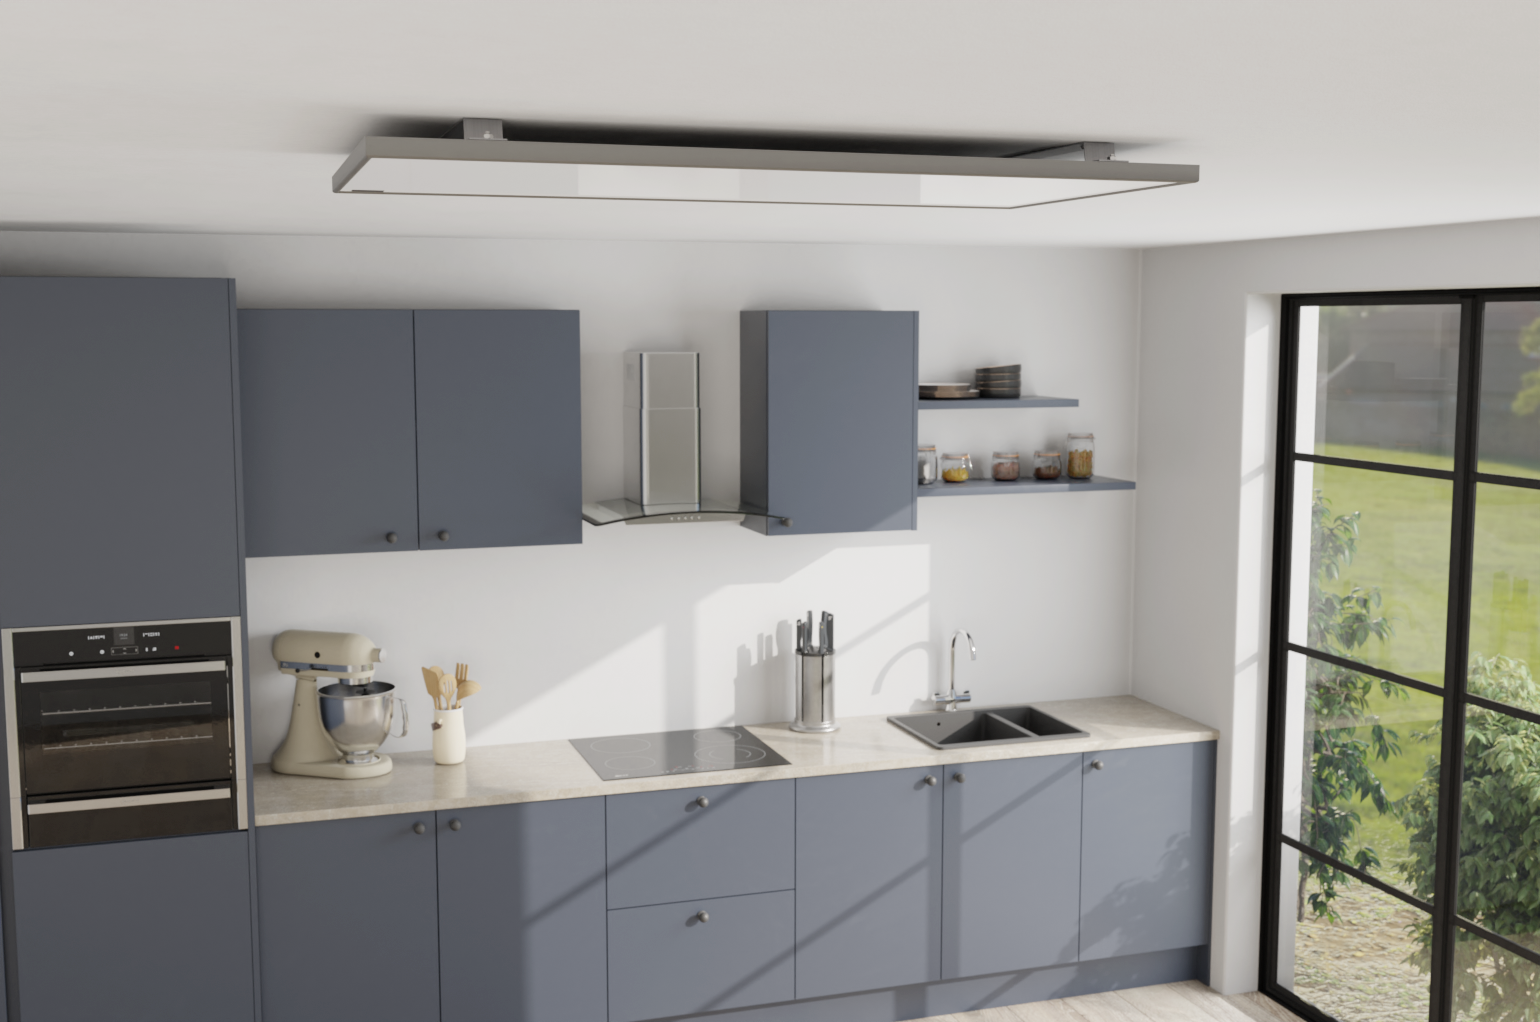 Frame Line IR Tak Värmare i Köket. Takvärmare. Effektiv och platssparrande infraröd takvärmare i diskret design, lämplig för små och möblerade rum, lätt att installera för bekväm värme i hemmet.